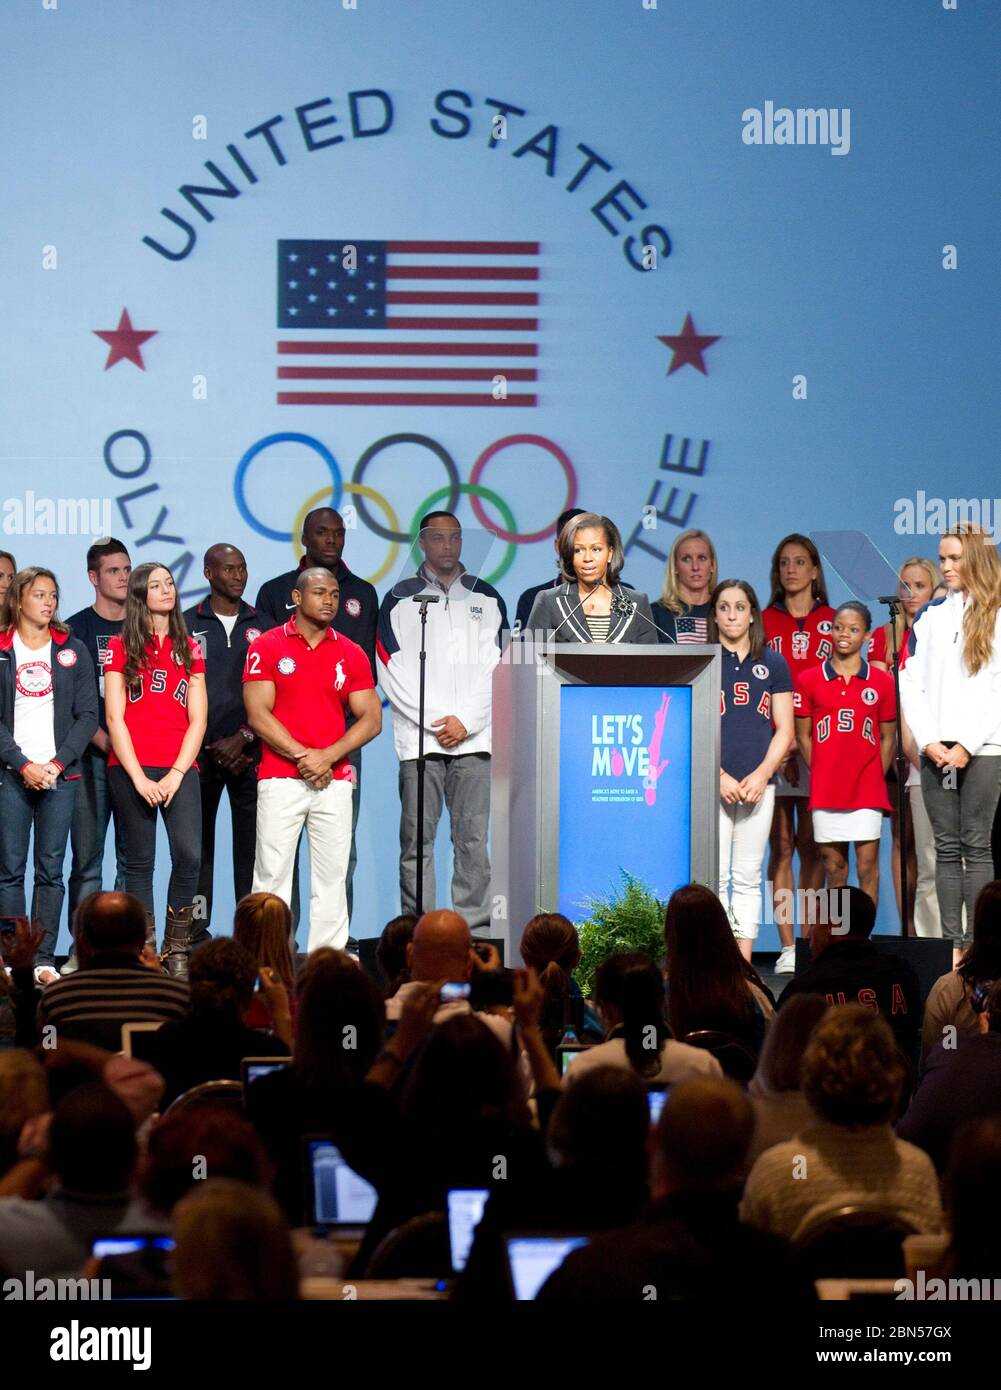 Dallas Texas, USA, Mai 2012: First Lady of the United States Michelle Obama spricht auf dem United States Olympic Media Summit zusammen mit mehreren Athleten auf der Bühne. Marjorie Kamys Cotera/Daemmrich Photography Stockfoto